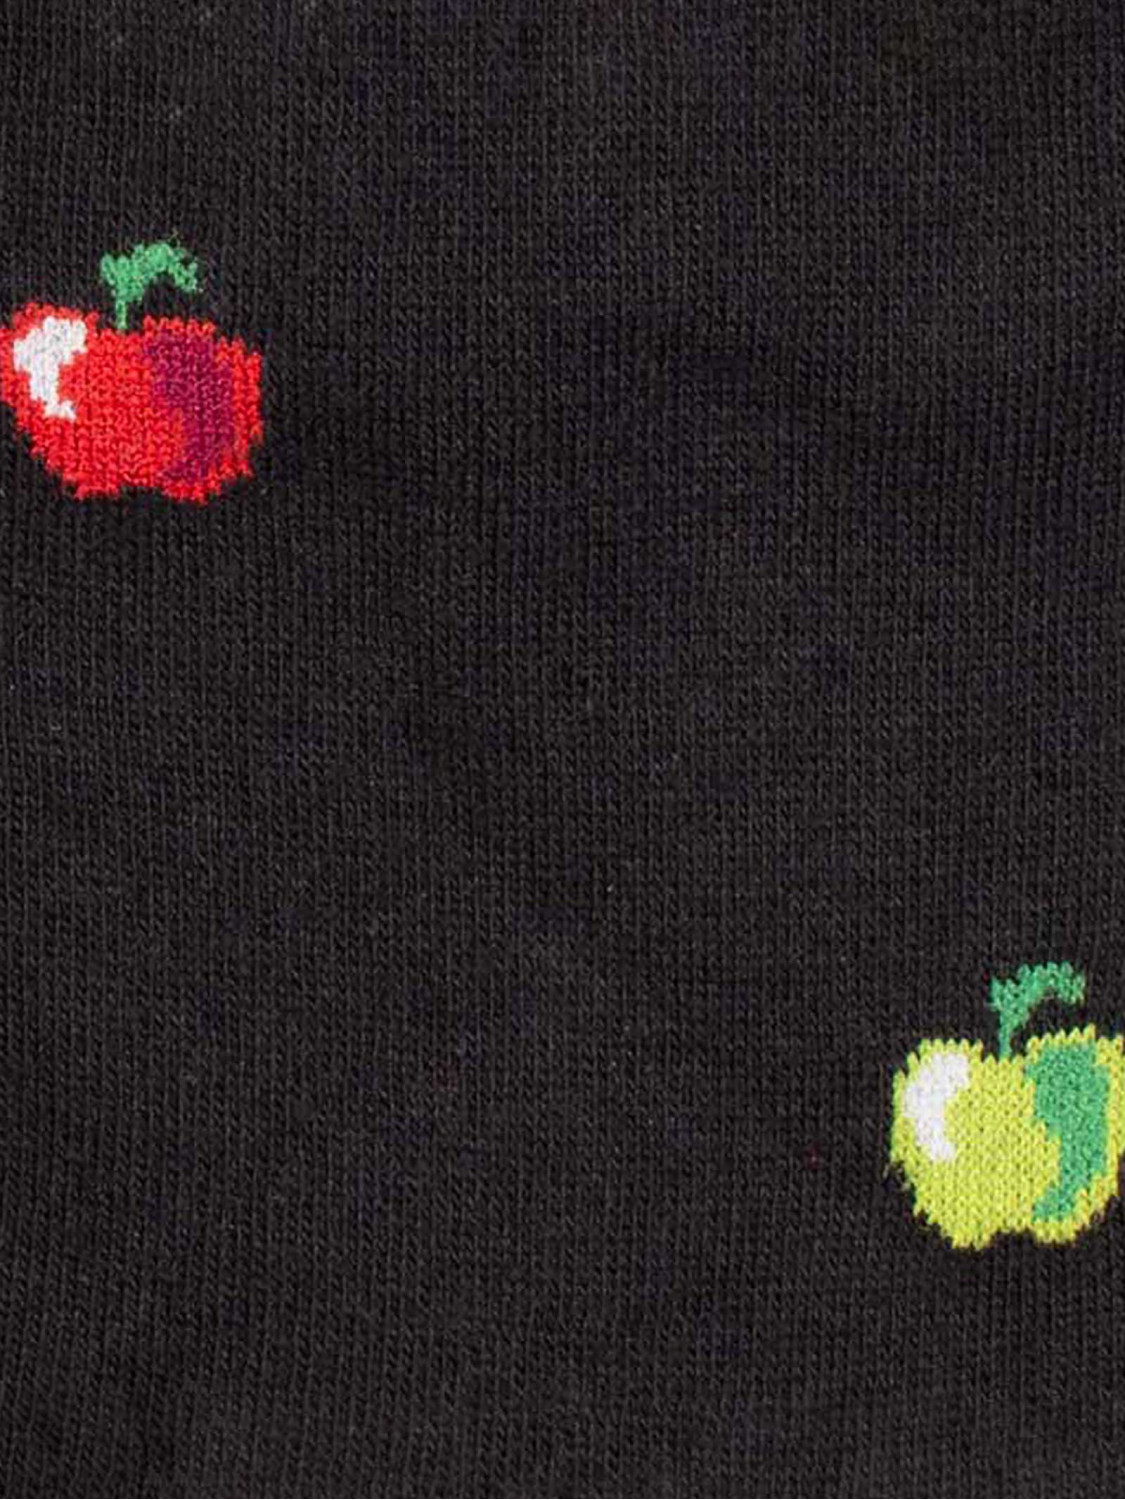 Kurze Socken mit Apfelmuster